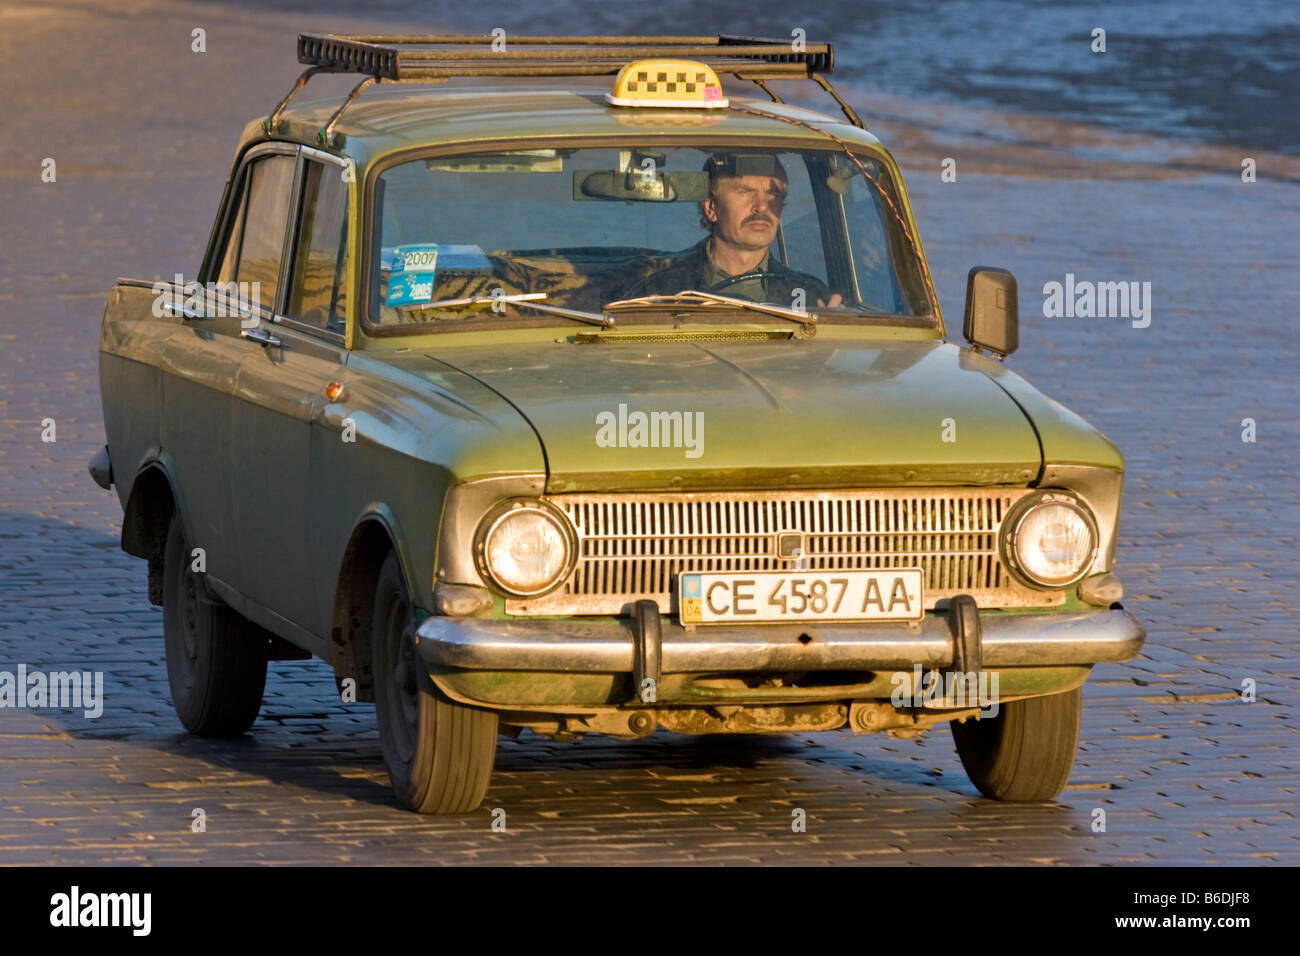 Sehr alte russische taxi Cernivci, Ukraine Stockfotografie